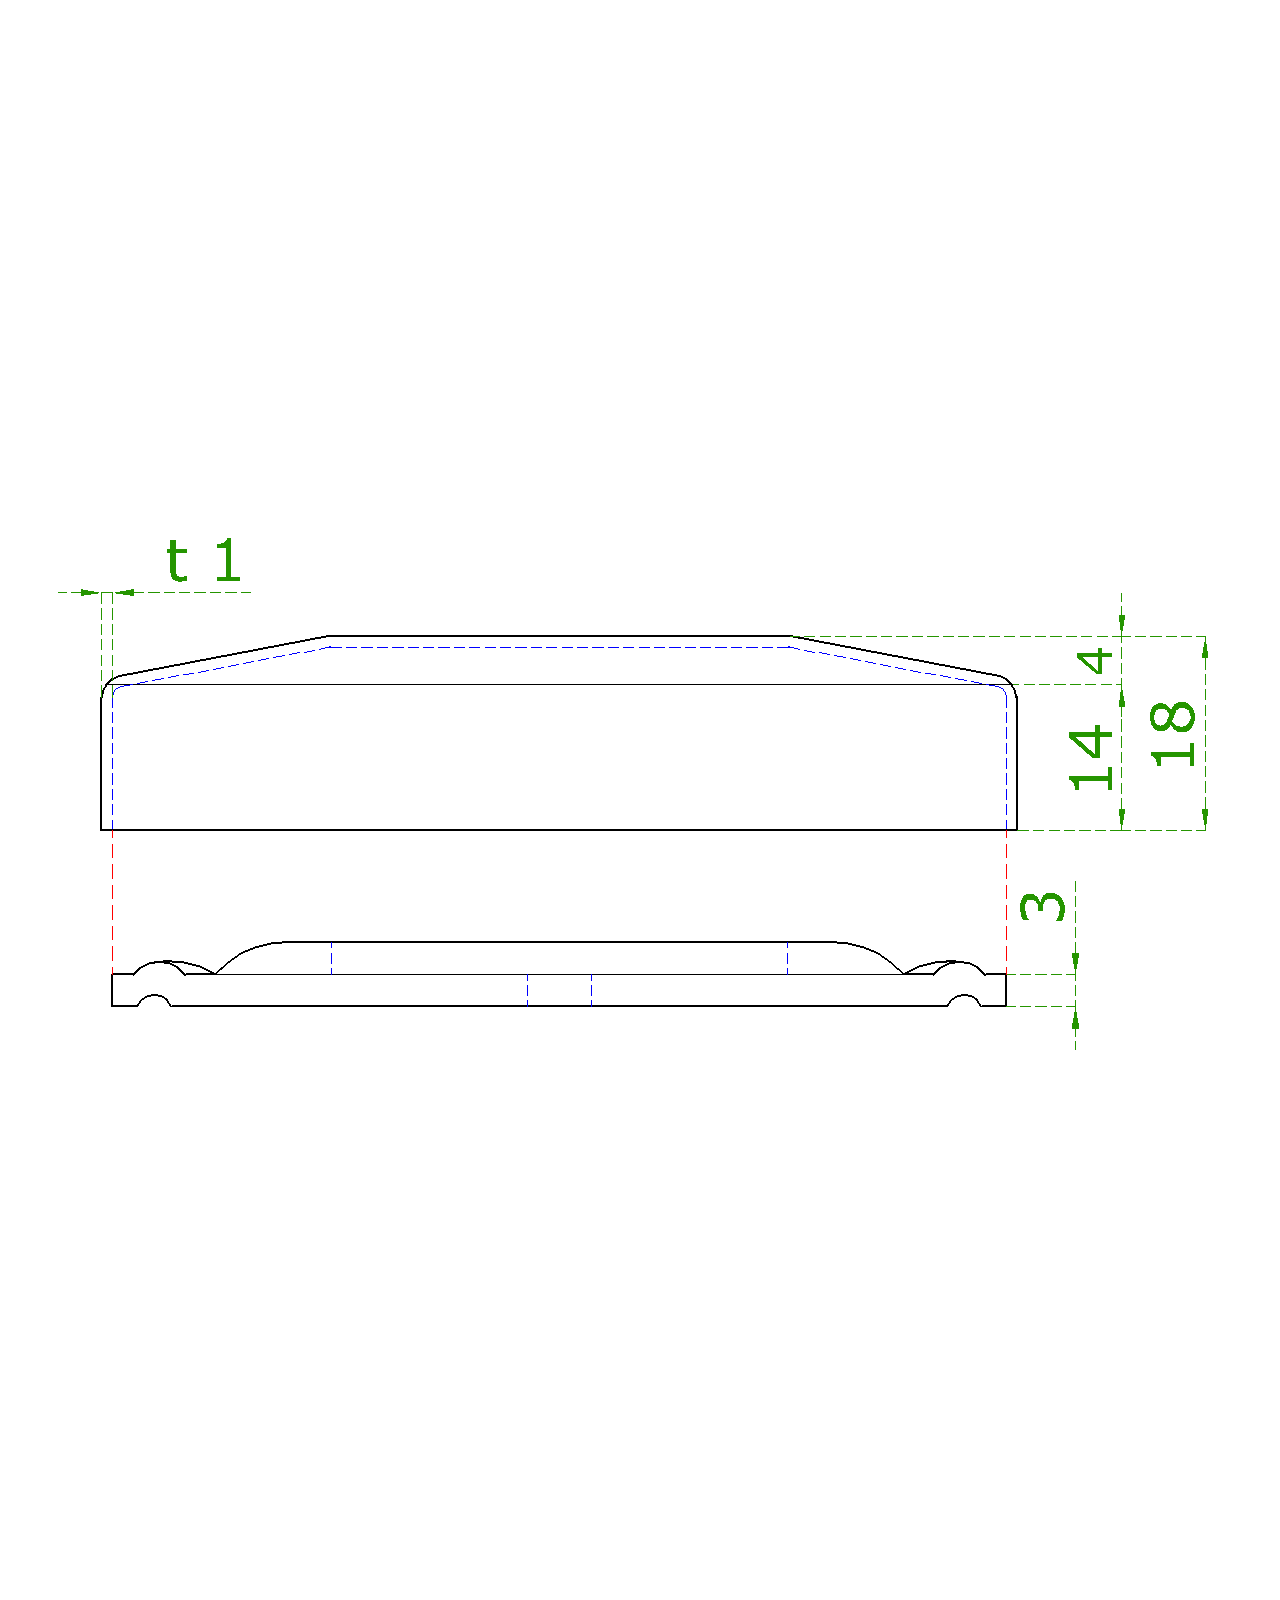 Kotevní deska s krytkou (set) na trubku ø 42,4 mm (ø 85 mm), nerez broušená K320 / AISI304